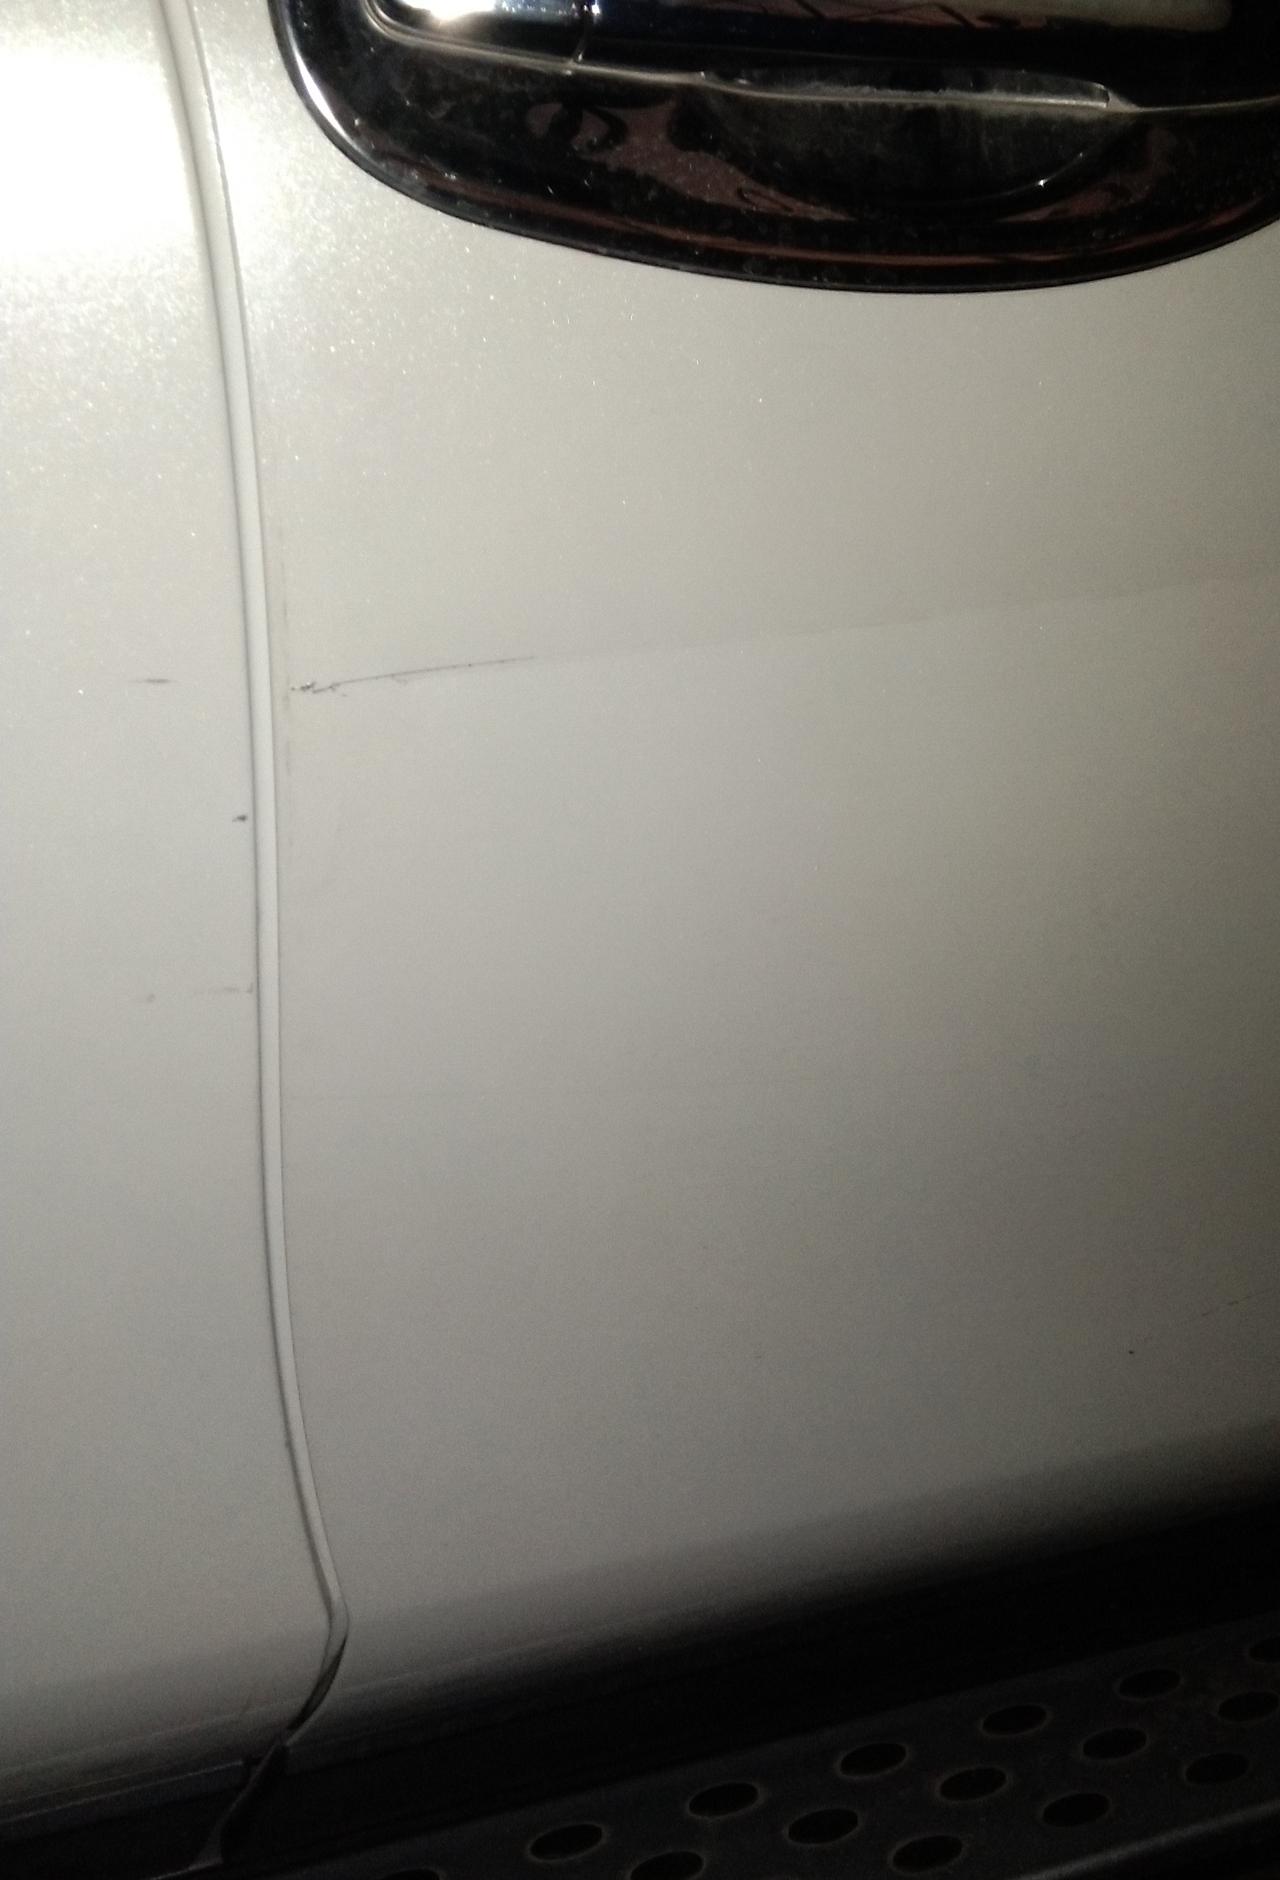 日产奇骏 副驾车门被刮了一条痕，有一段漏底漆了，请问各位车友像这情况修复大概需要多少钱？